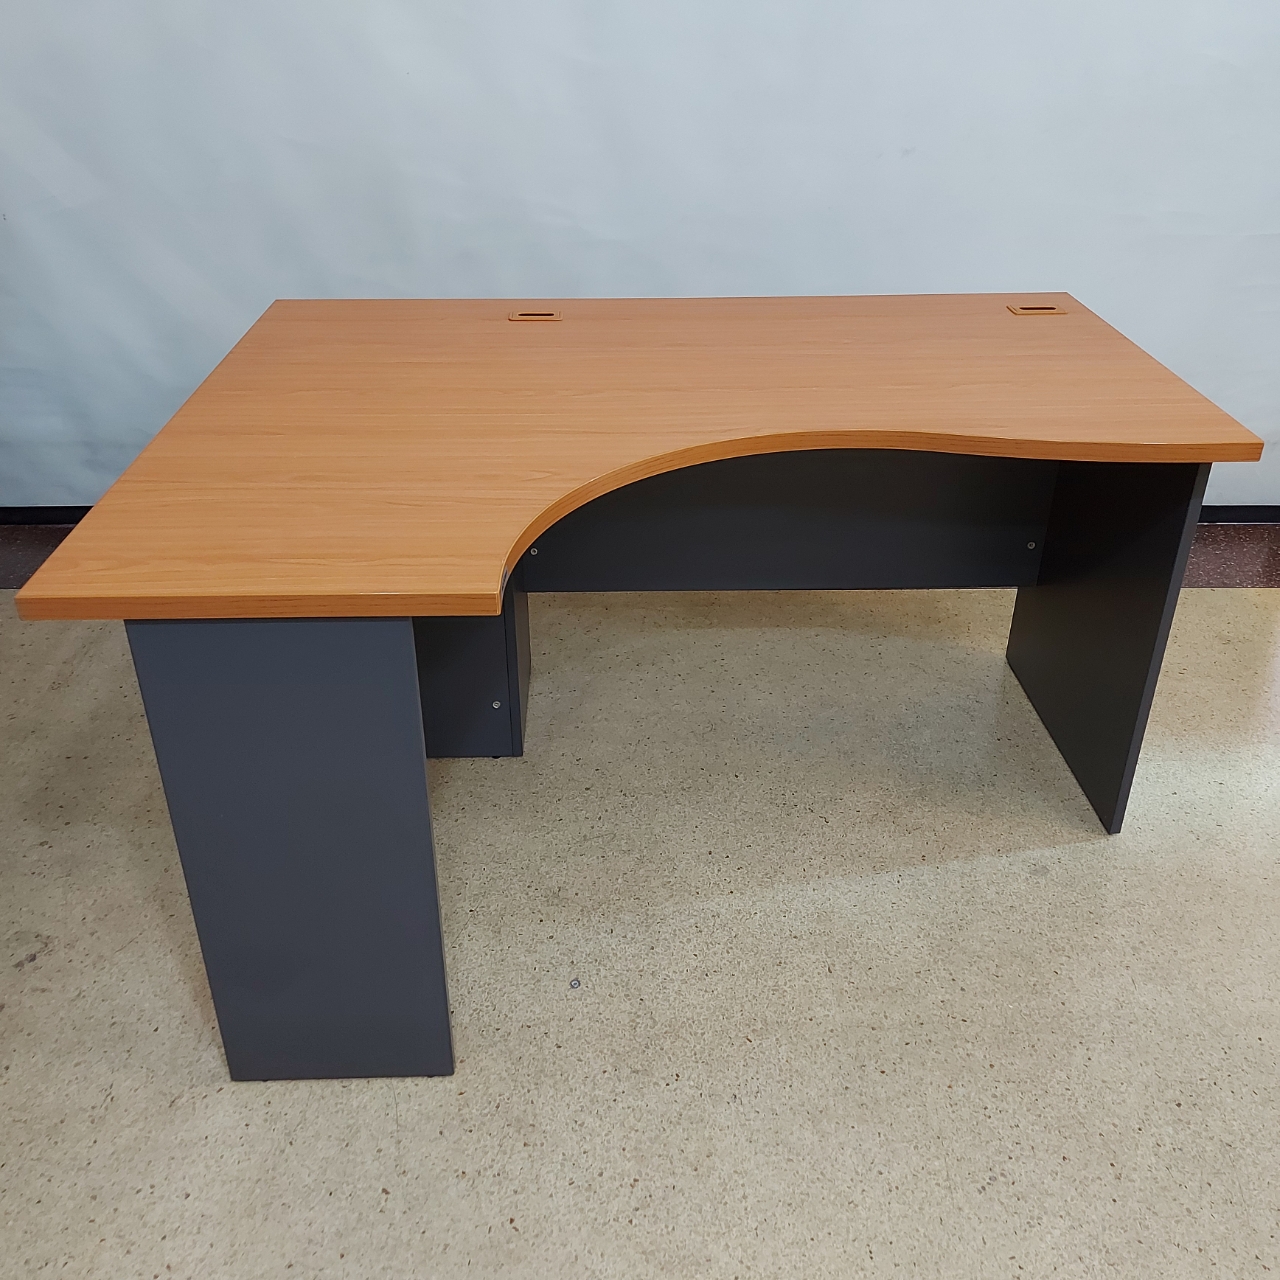  โต๊ะสำนักงานแบบโล่งสีเชอรี่ขาไม้สีเทา